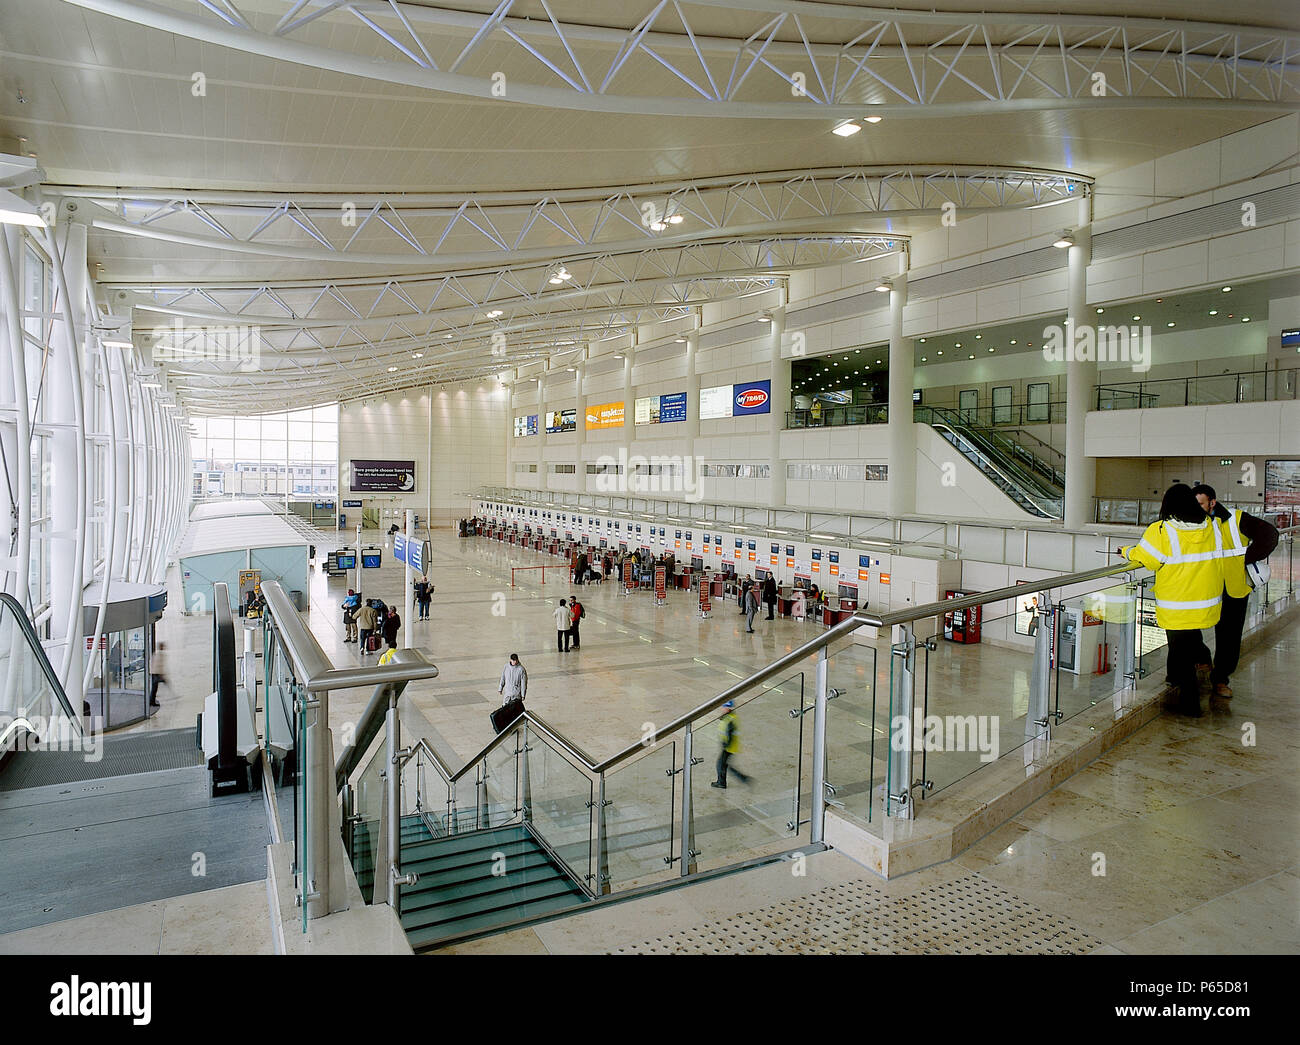 El Concourse del Aeropuerto John Lennon de Liverpool en el edificio de la Terminal. Liverpool, Reino Unido. Foto de stock